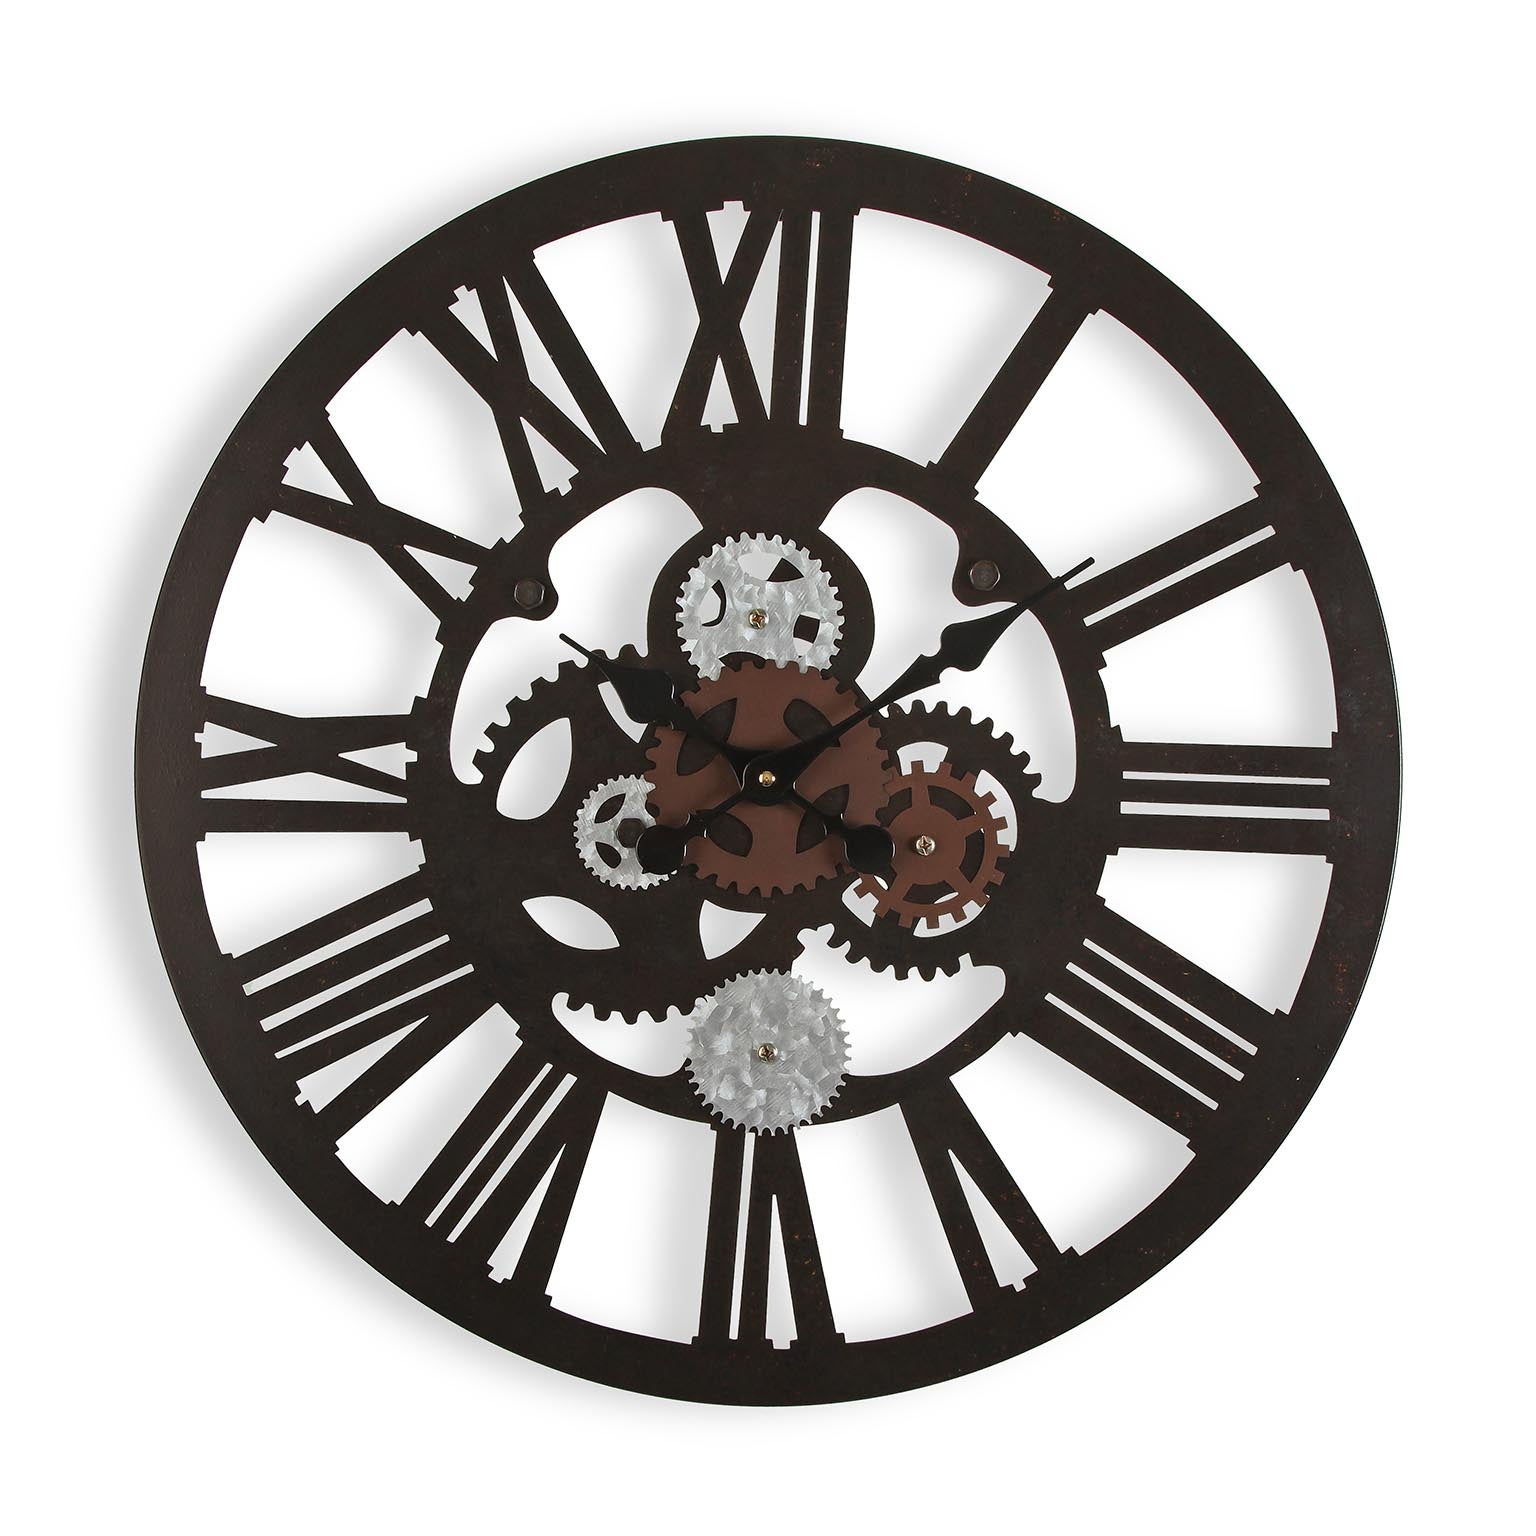 Versa Edsom Reloj de Pared Decorativo para la Cocina, el Salón, el Comedor  o la Habitación